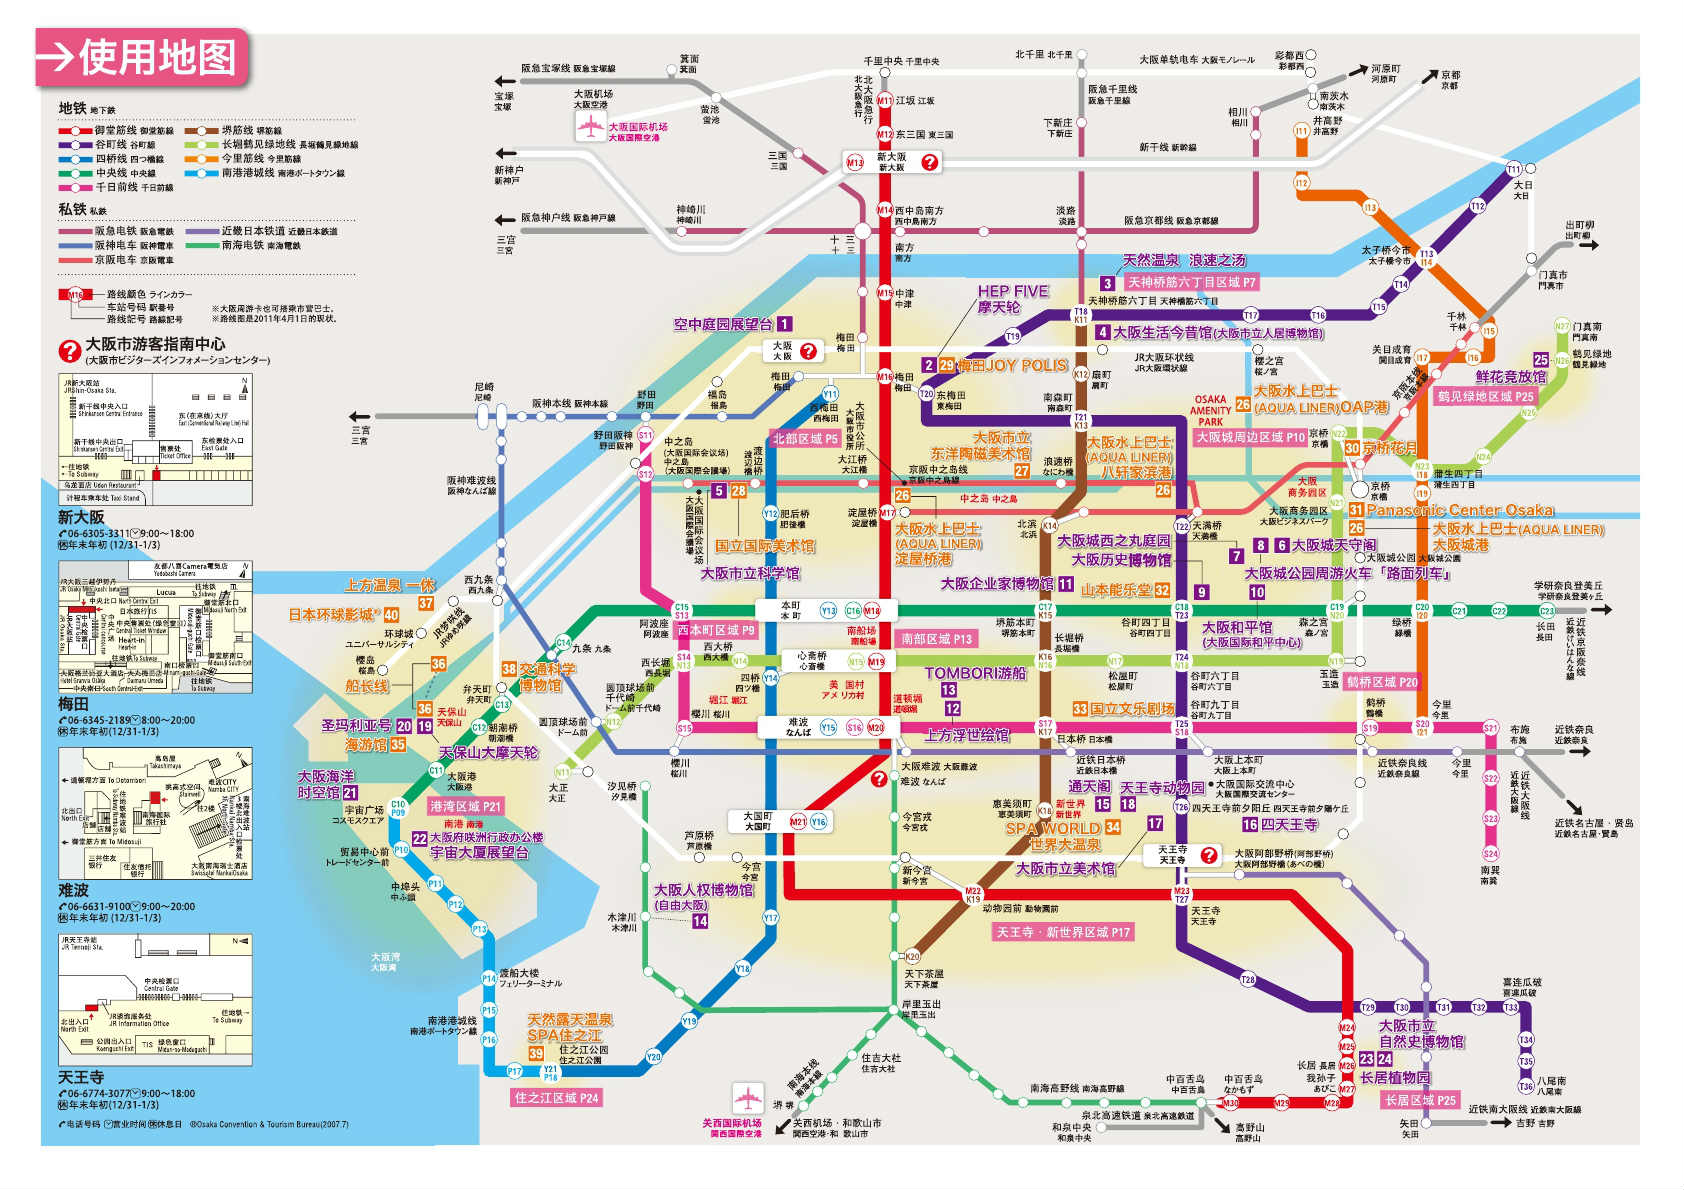 2012年夏:东京 京都 大阪准备贴 旅游天地 篱; 附大阪地铁地图; 大阪图片